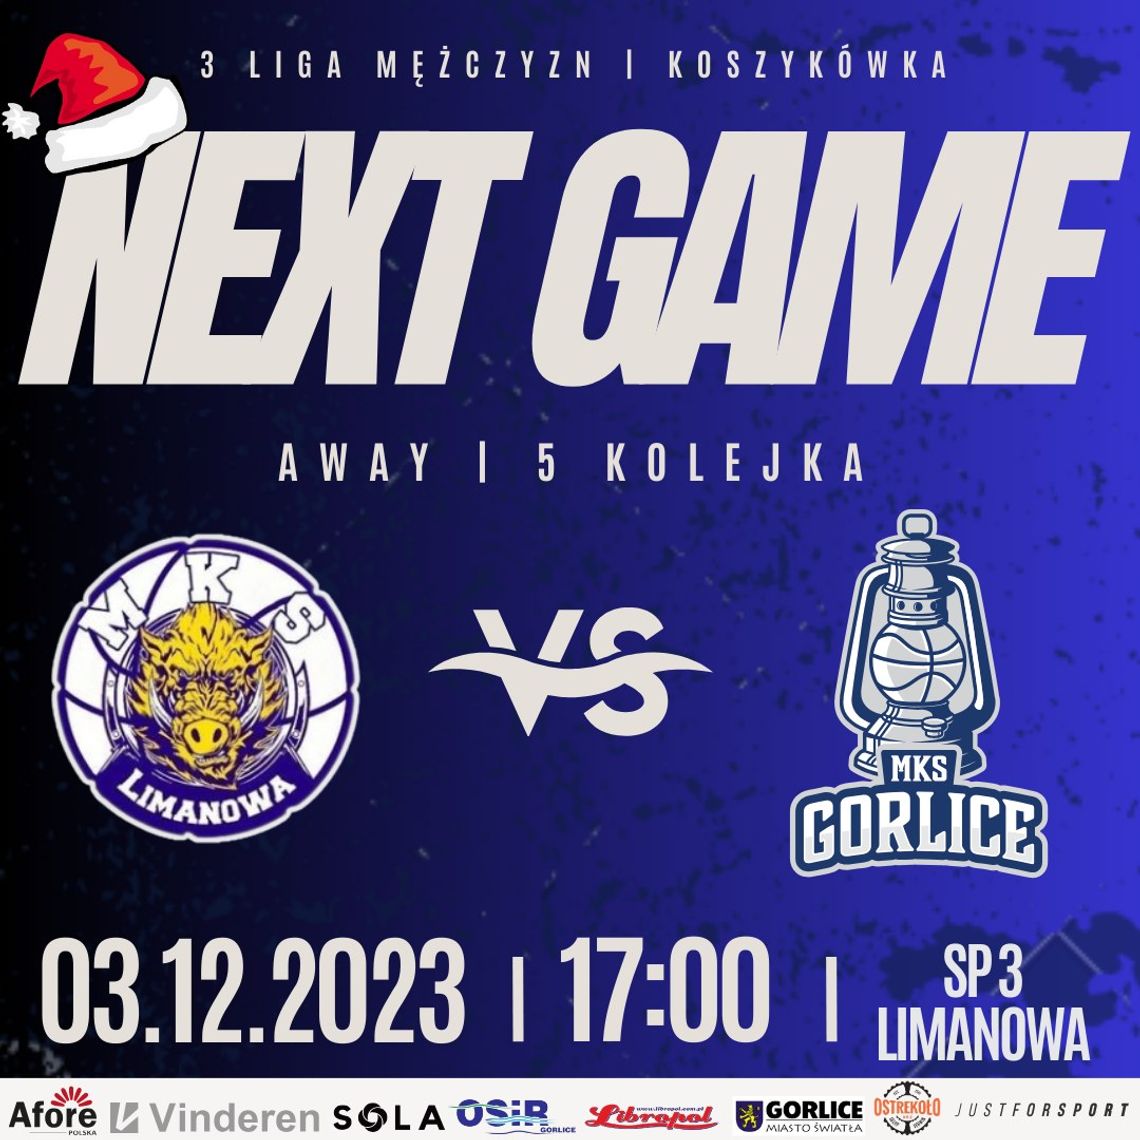 Koszykówka 3 liga mężczyzn MKS Limanowa - MKS Gorlice | halogorlice.info